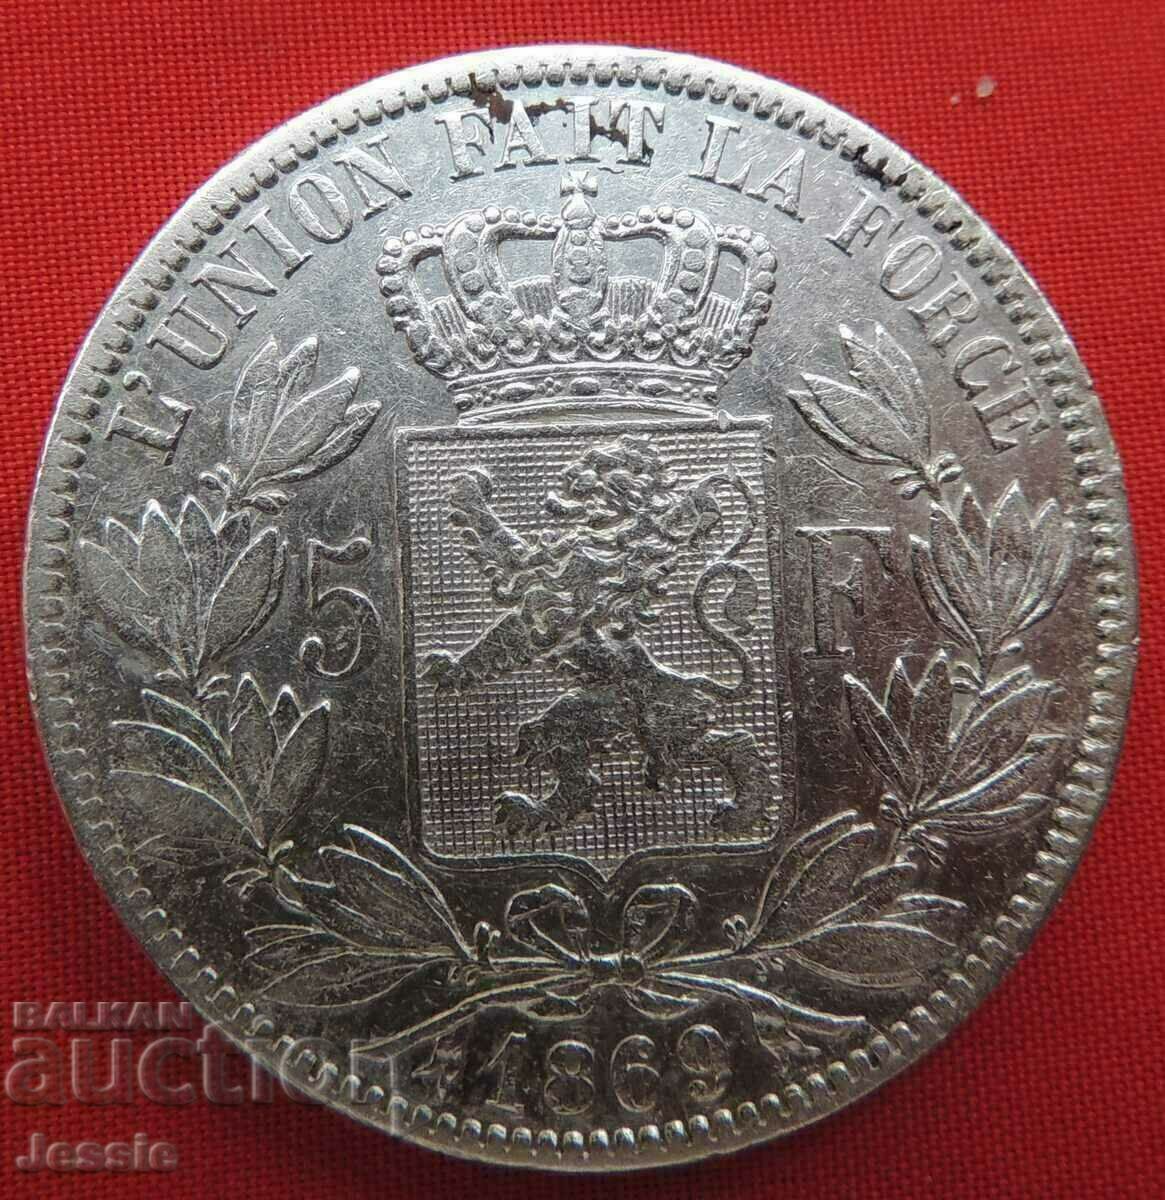 5 Francs 1869 Belgium Silver